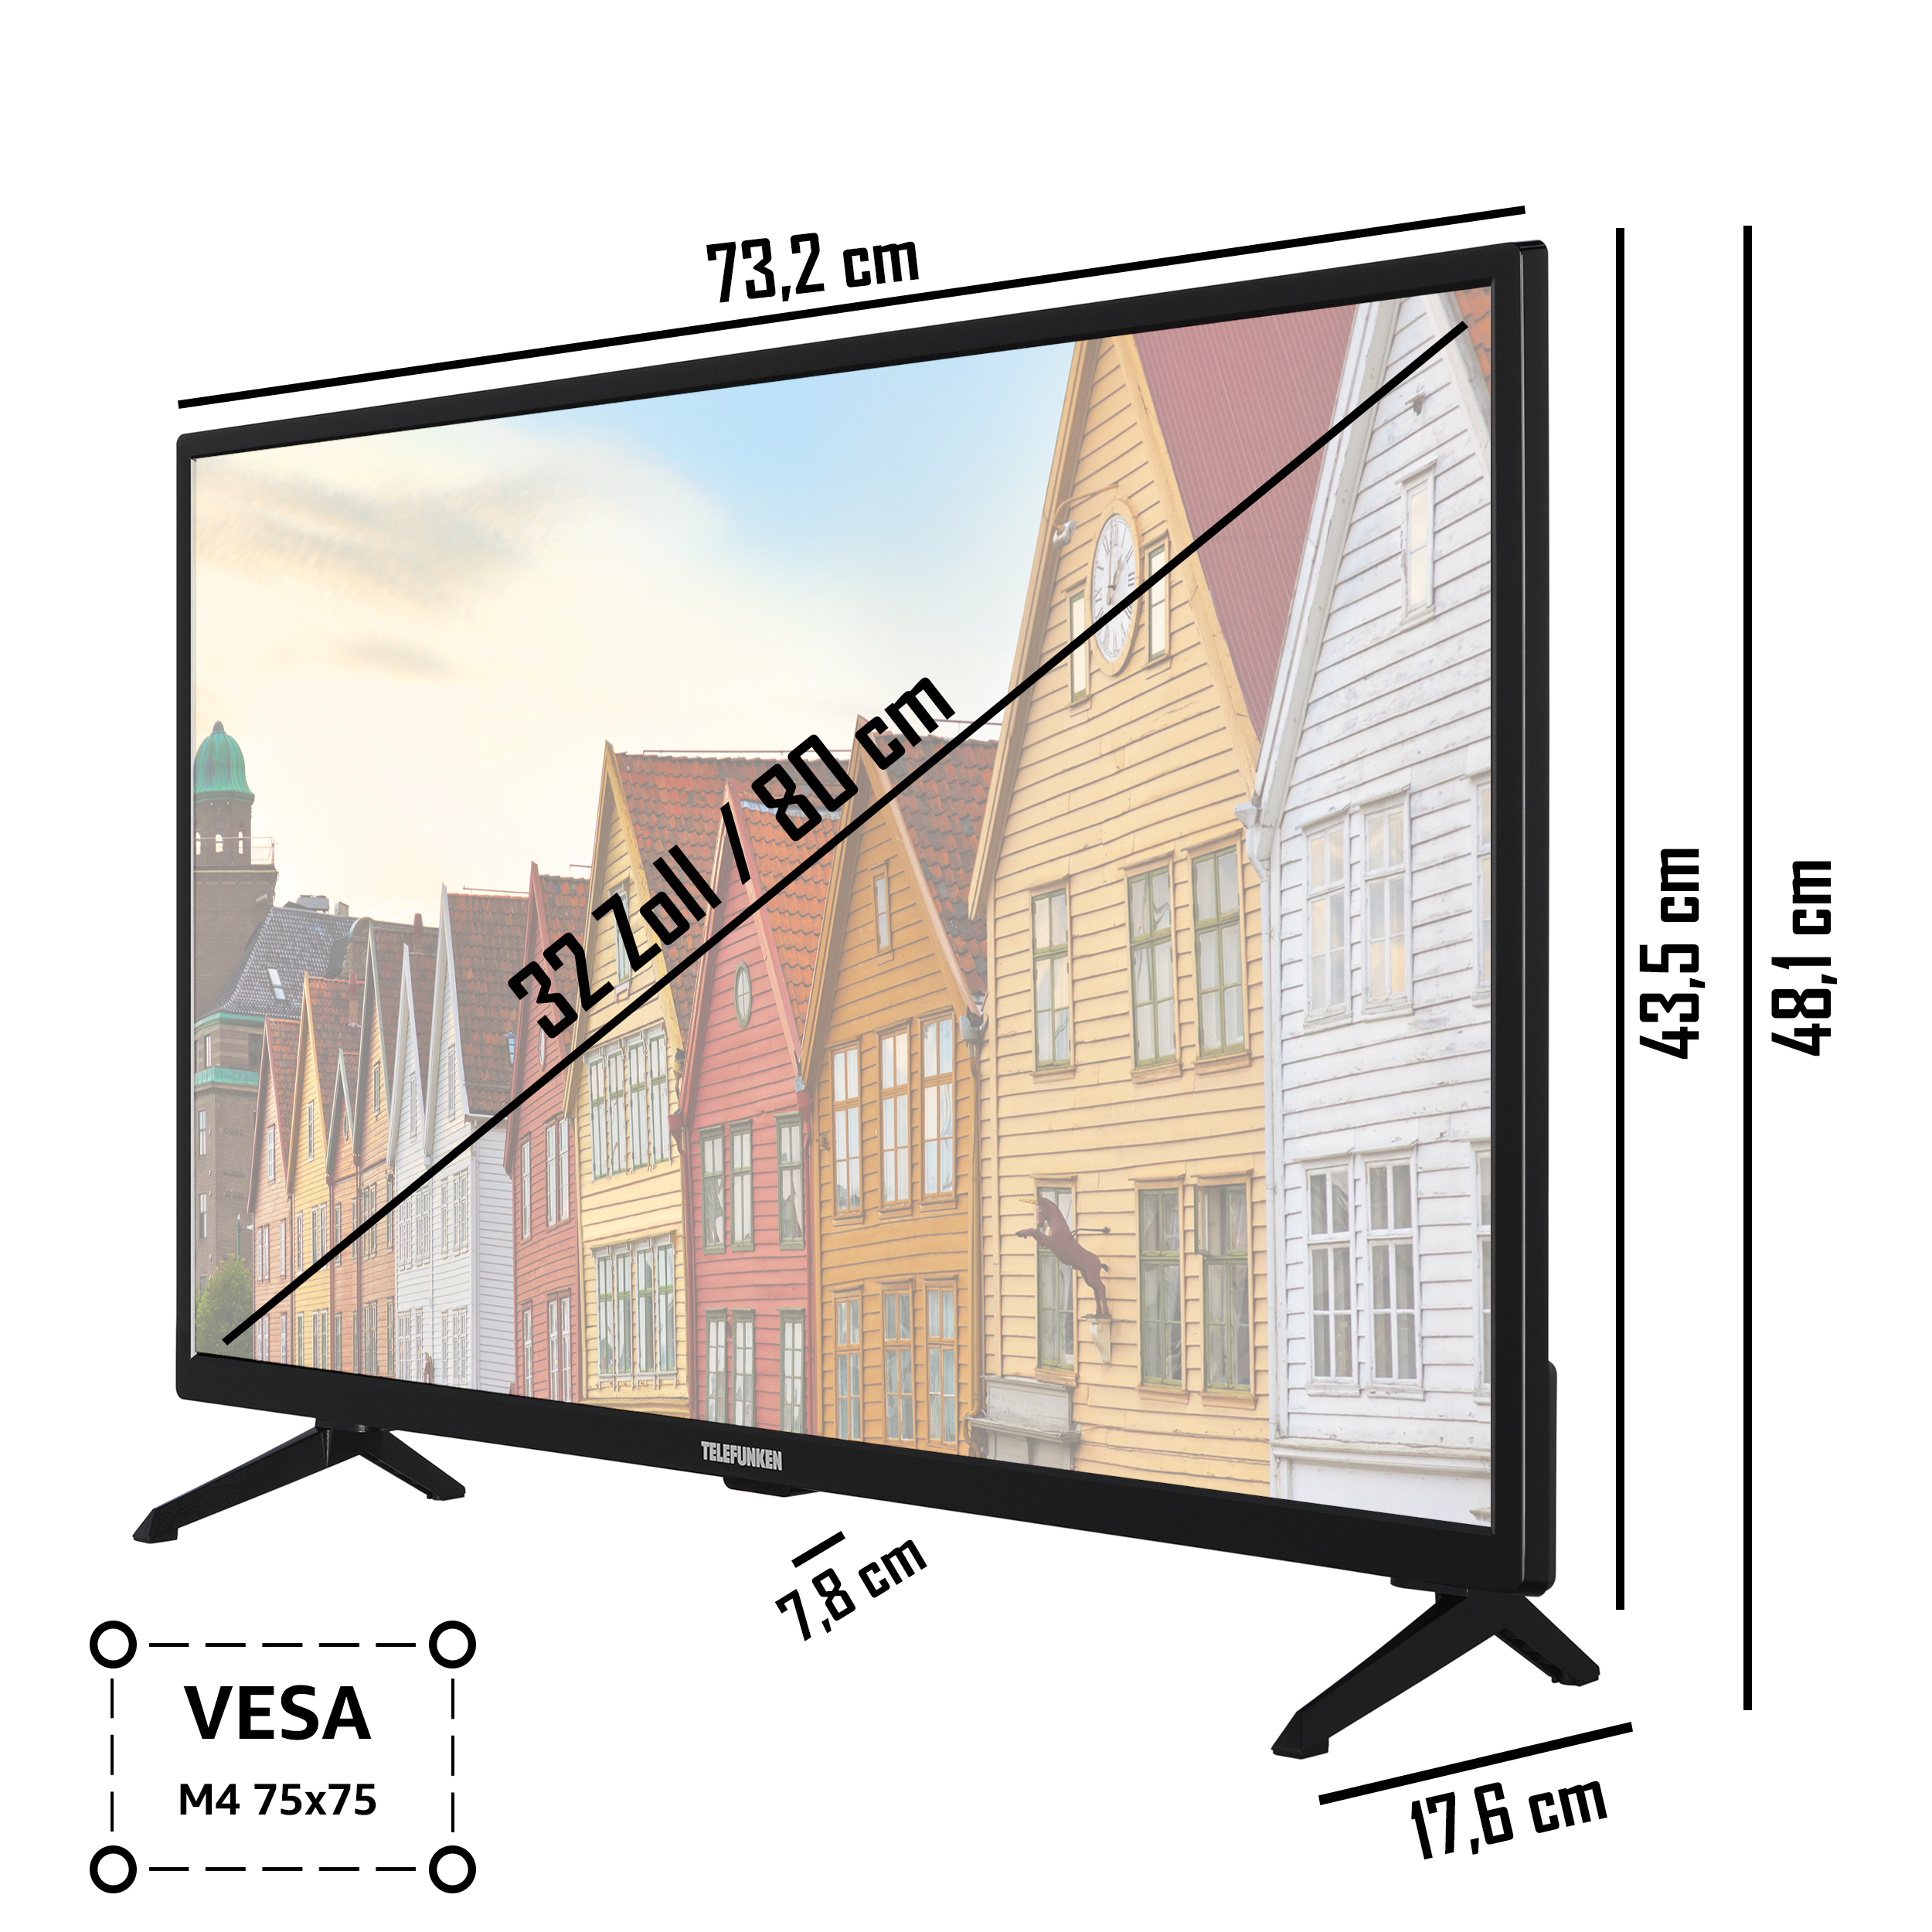 Zoll 32 TELEFUNKEN / TV) Full-HD, XF32SN550SD (Flat, LED SMART 80 TV cm,